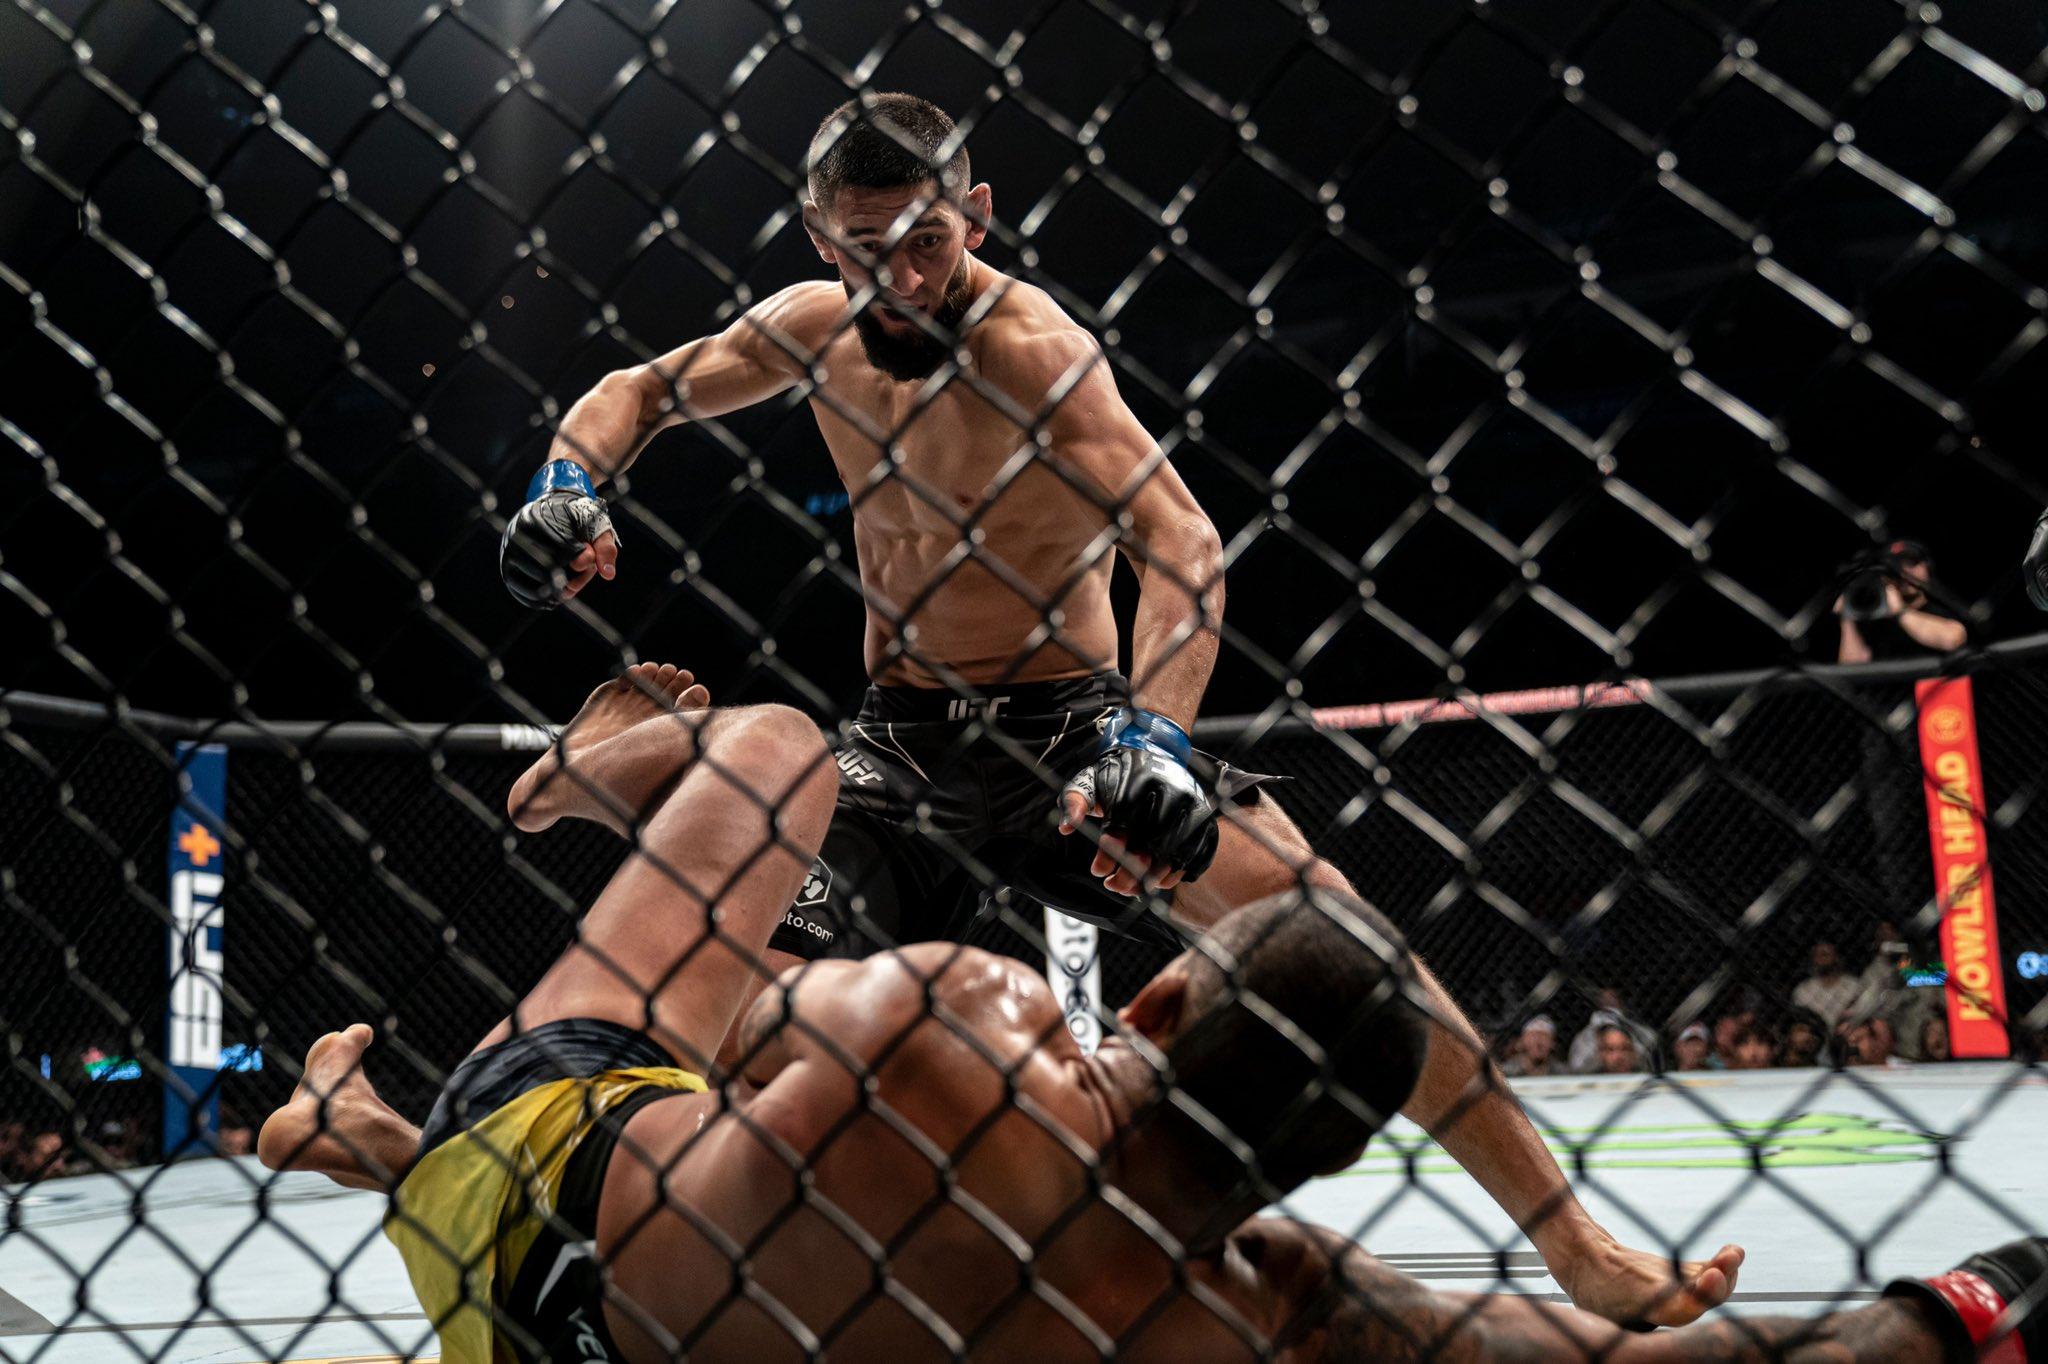 El peleador de mma ruso Khamzat Chimaev golpeando a su rival en el suelo en un combate de UFC